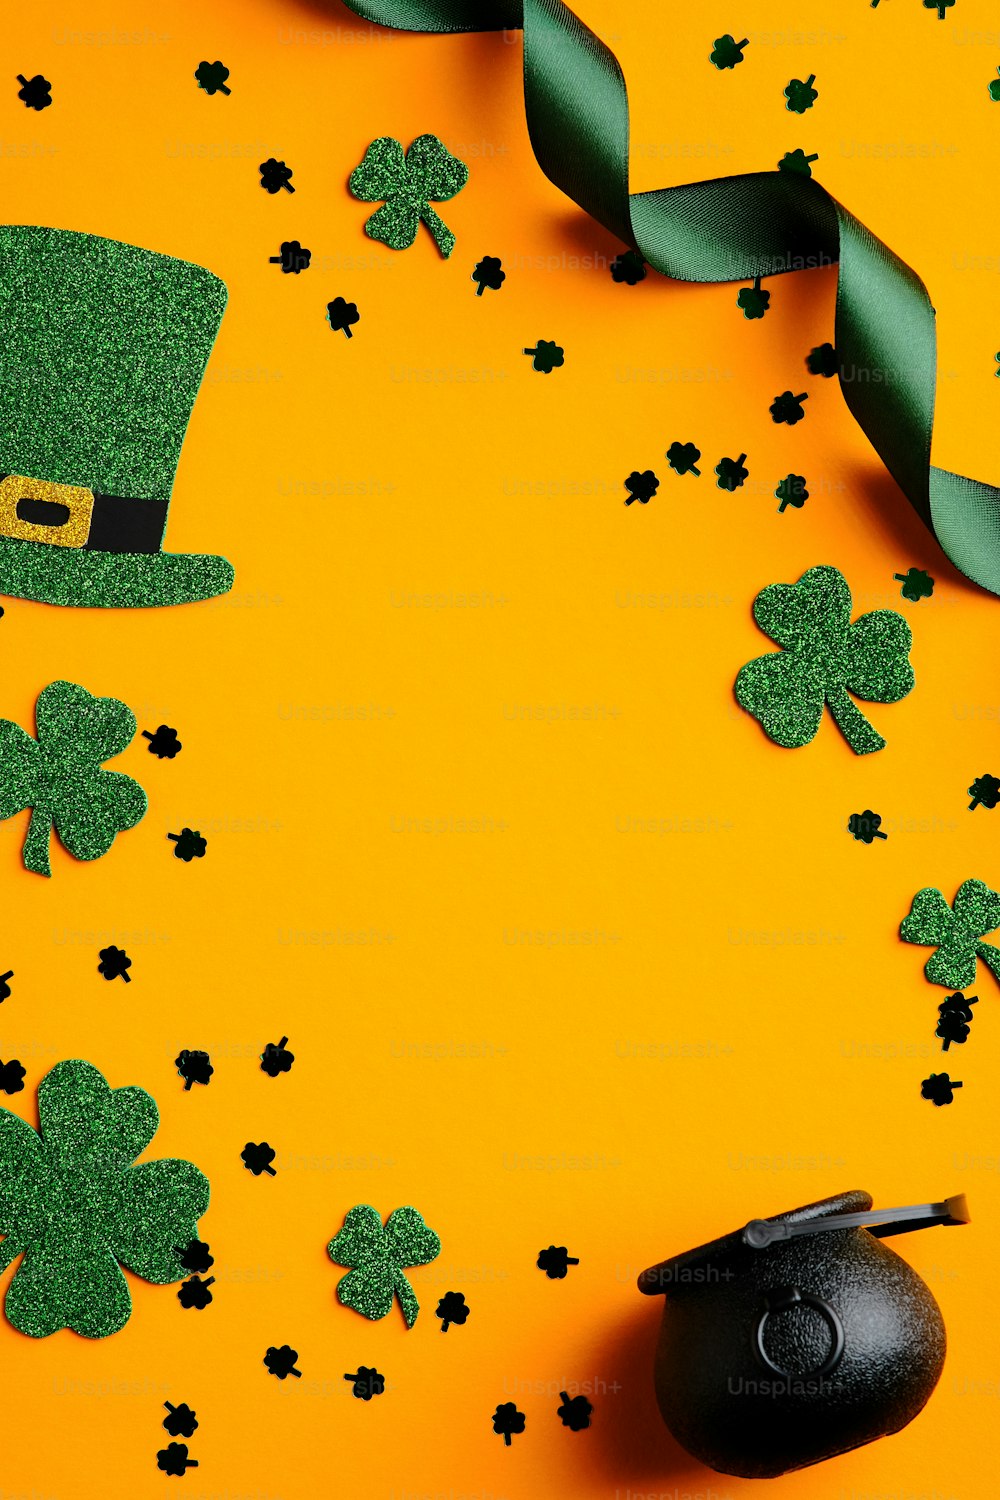 Khi nghĩ đến ngày Thánh Patrick, bạn liệu có nghĩ đến hình ảnh những chiếc mũ leprechauns kết hợp với nồi đồng và lá cỏ may mắn không? Chúng tôi muốn chia sẻ với bạn những bức ảnh tuyệt đẹp liên quan đến các yếu tố ấy, mang đến cho bạn cảm giác may mắn và phấn khởi. Hãy cùng đến và thưởng thức!